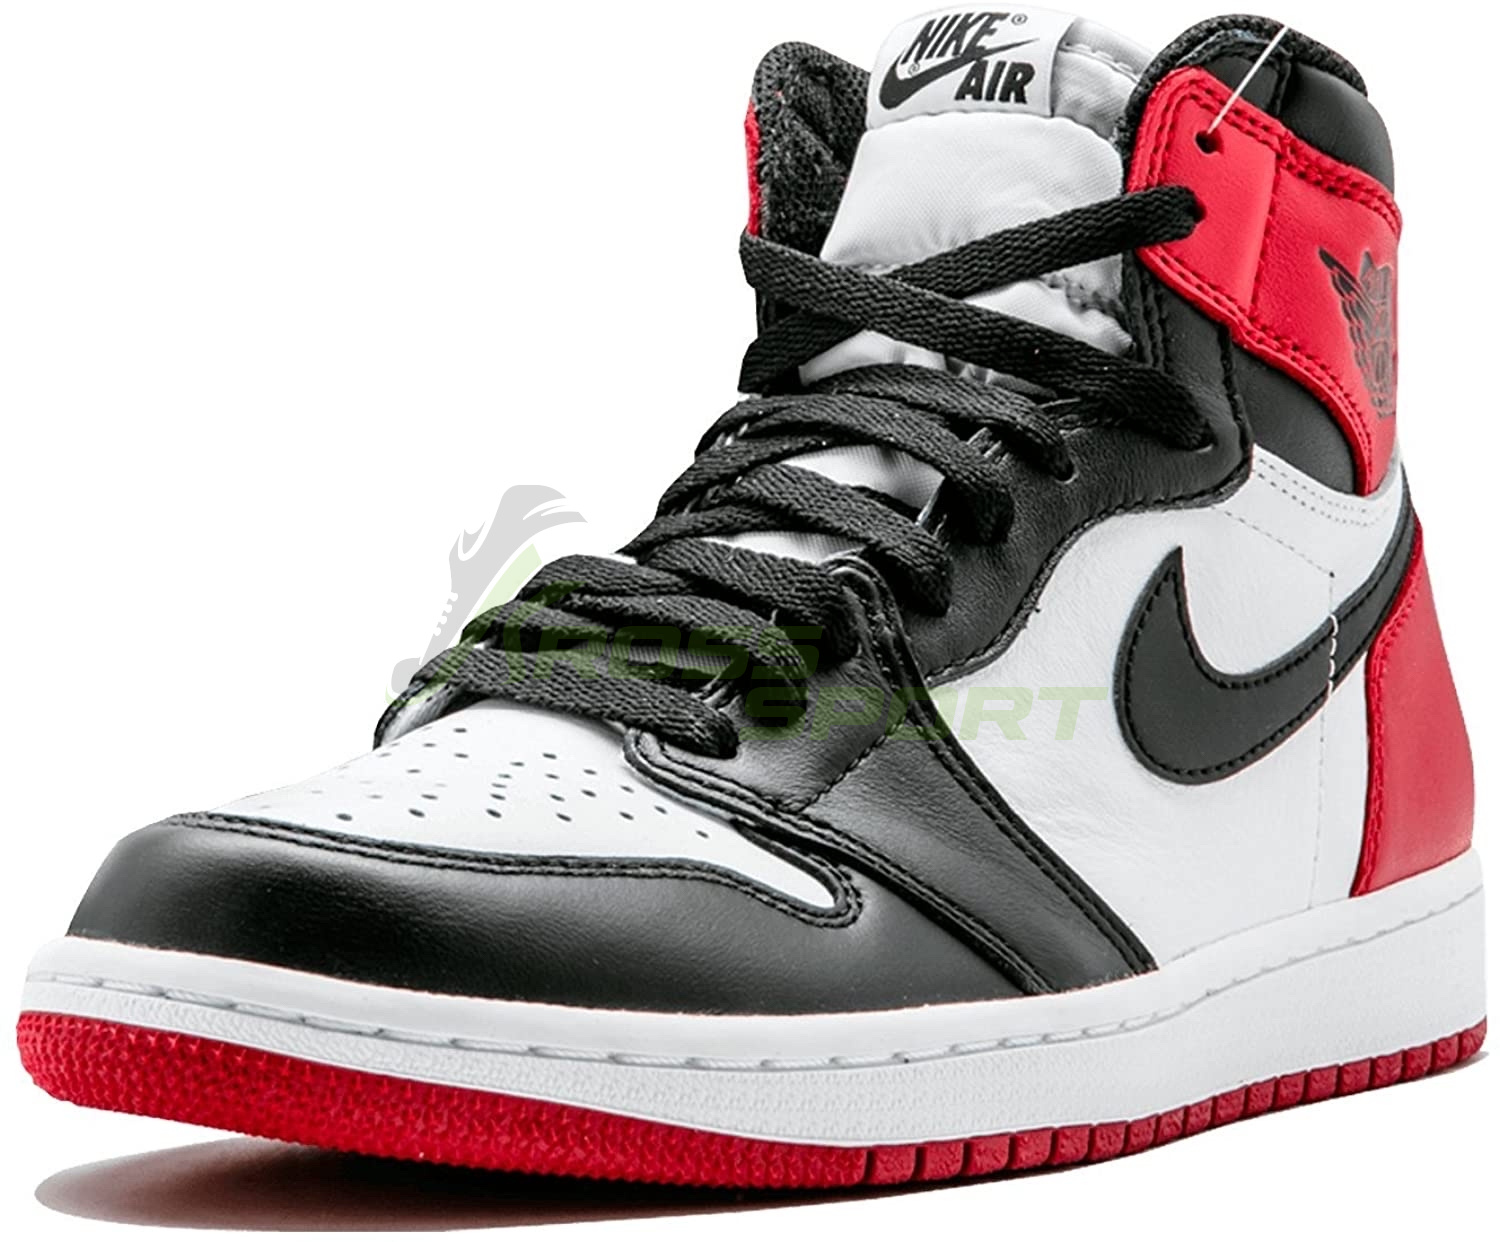  Nike Air Jordan 1 Retro "Black Toe" Black/White/Red